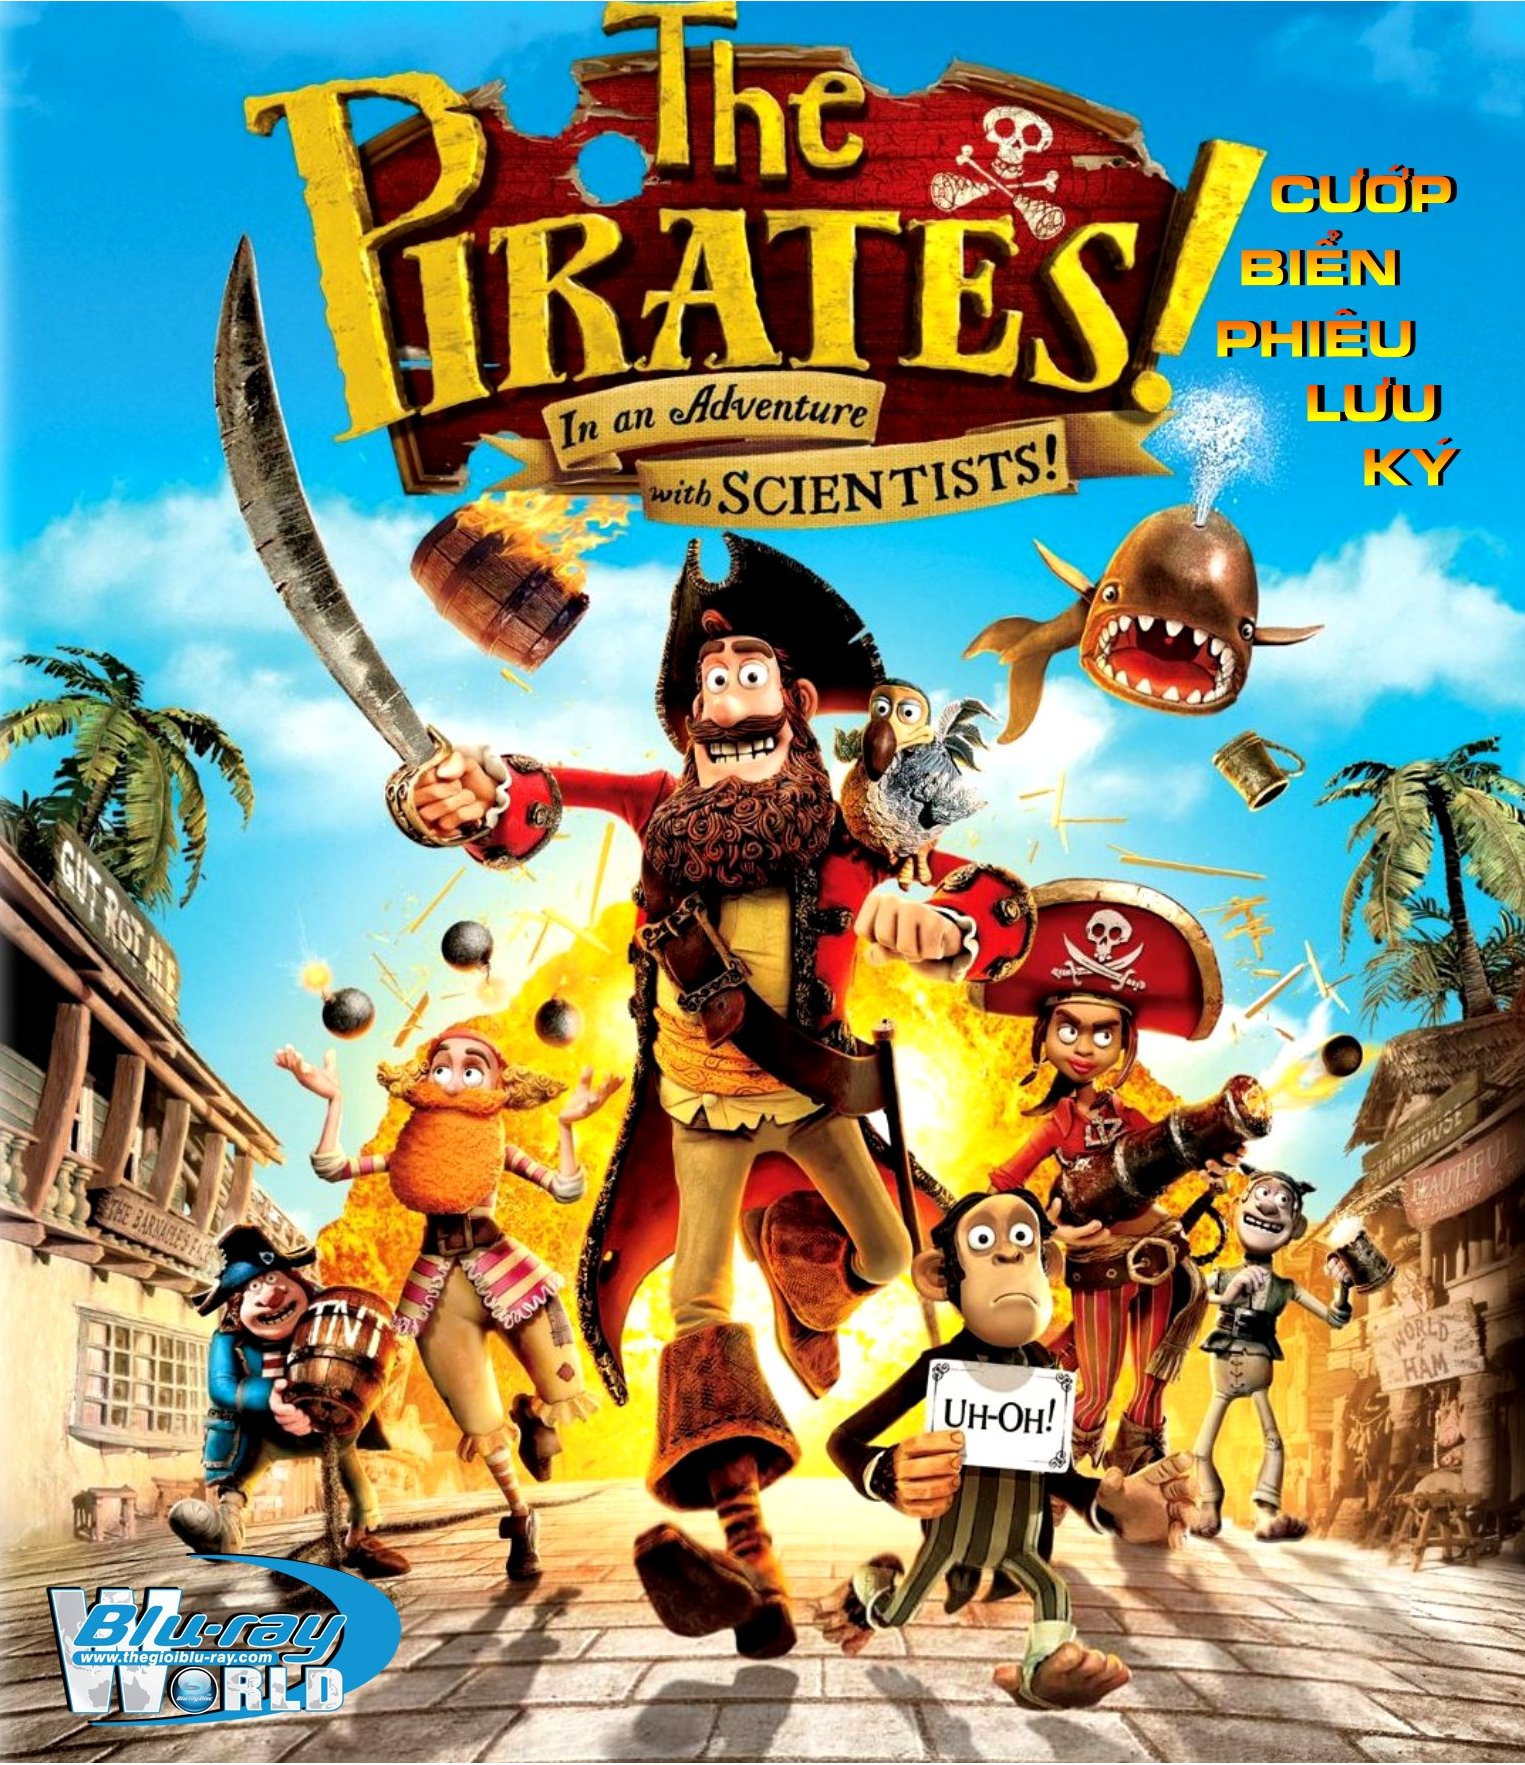 B872 - The Pirates! Band of Misfits - CƯỚP BIỂN PHIÊU LƯU KÝ 2D 25G (DTS-HD 5.1) 